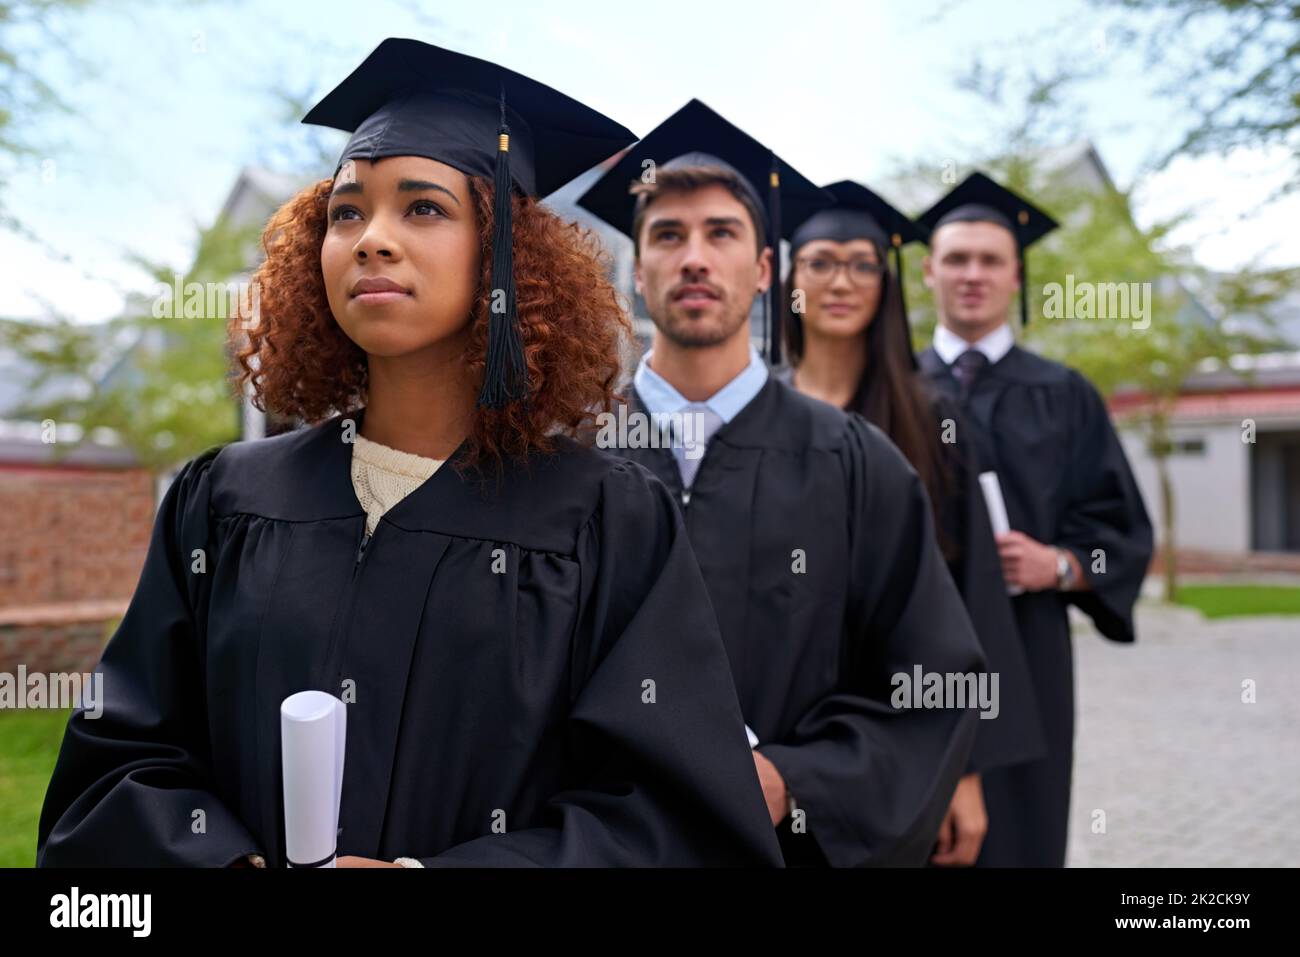 Istruzione superiore per alte aspirazioni. Shot di studenti universitari laureati in piedi in una fila guardando verso l'alto. Foto Stock